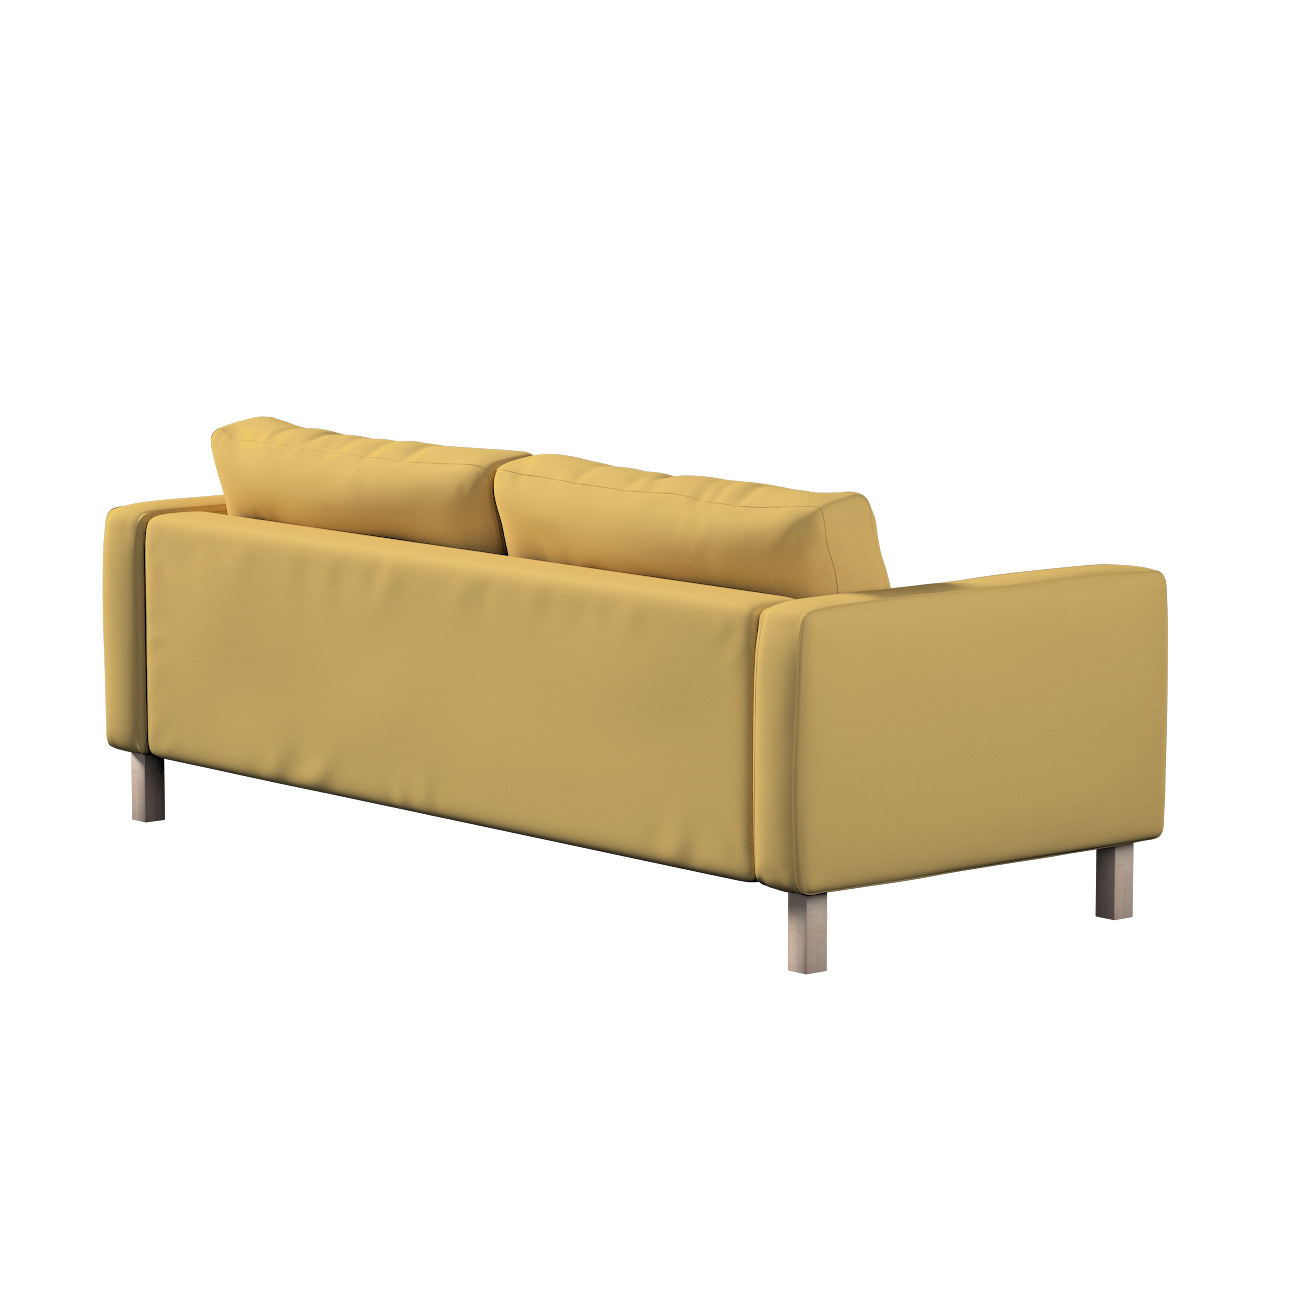 Bezug für Karlstad 3-Sitzer Sofa nicht ausklappbar, kurz, chiffongelb, Bezu günstig online kaufen